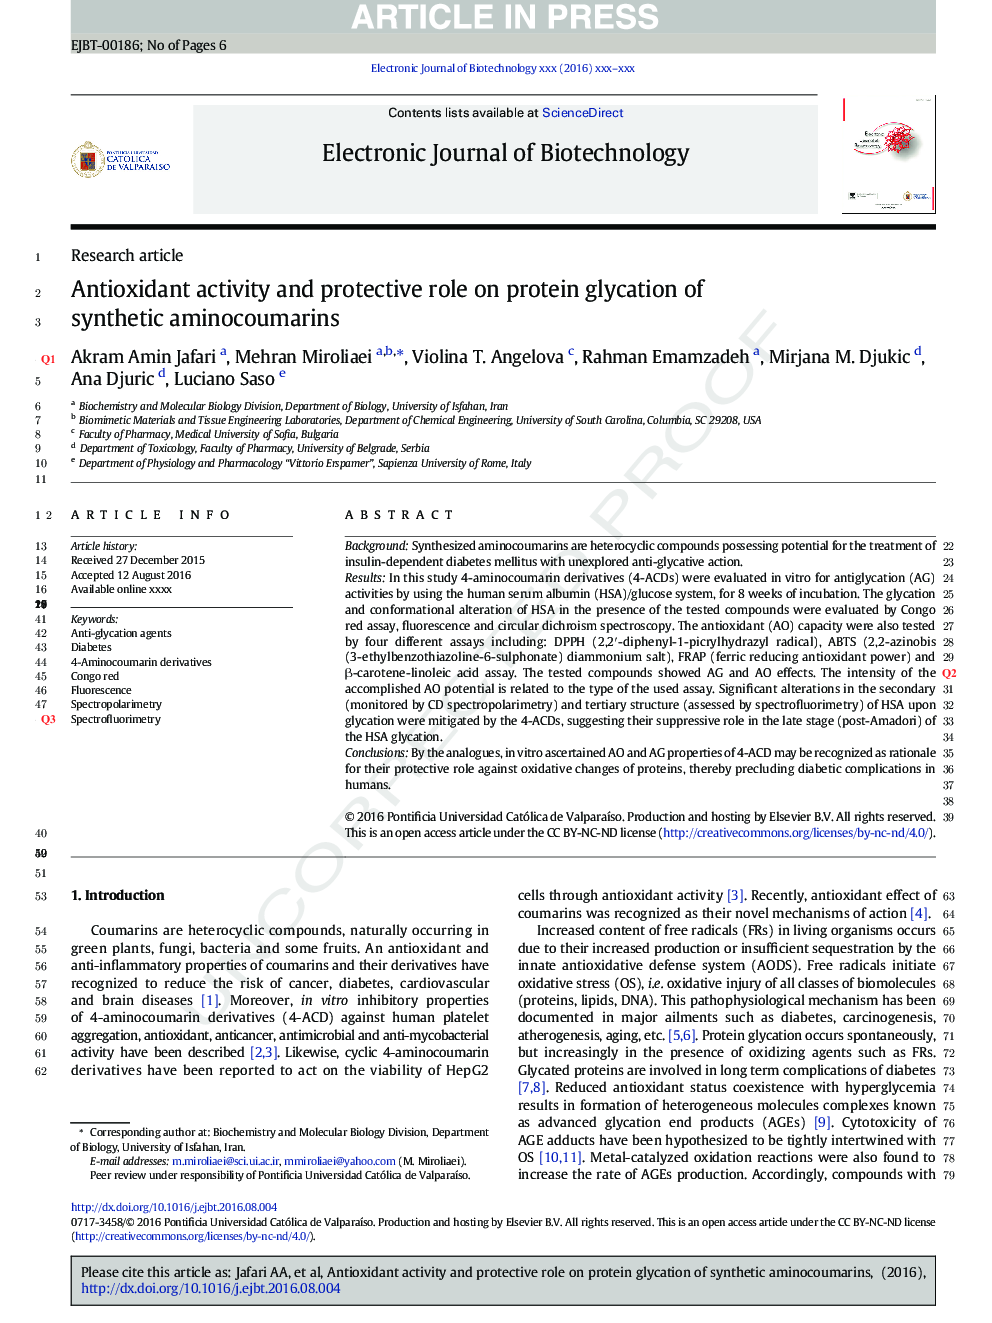 فعالیت آنتیاکسیدانی و نقش محافظتی در گلیکازی پروتئین آمینو کومارین مصنوعی 